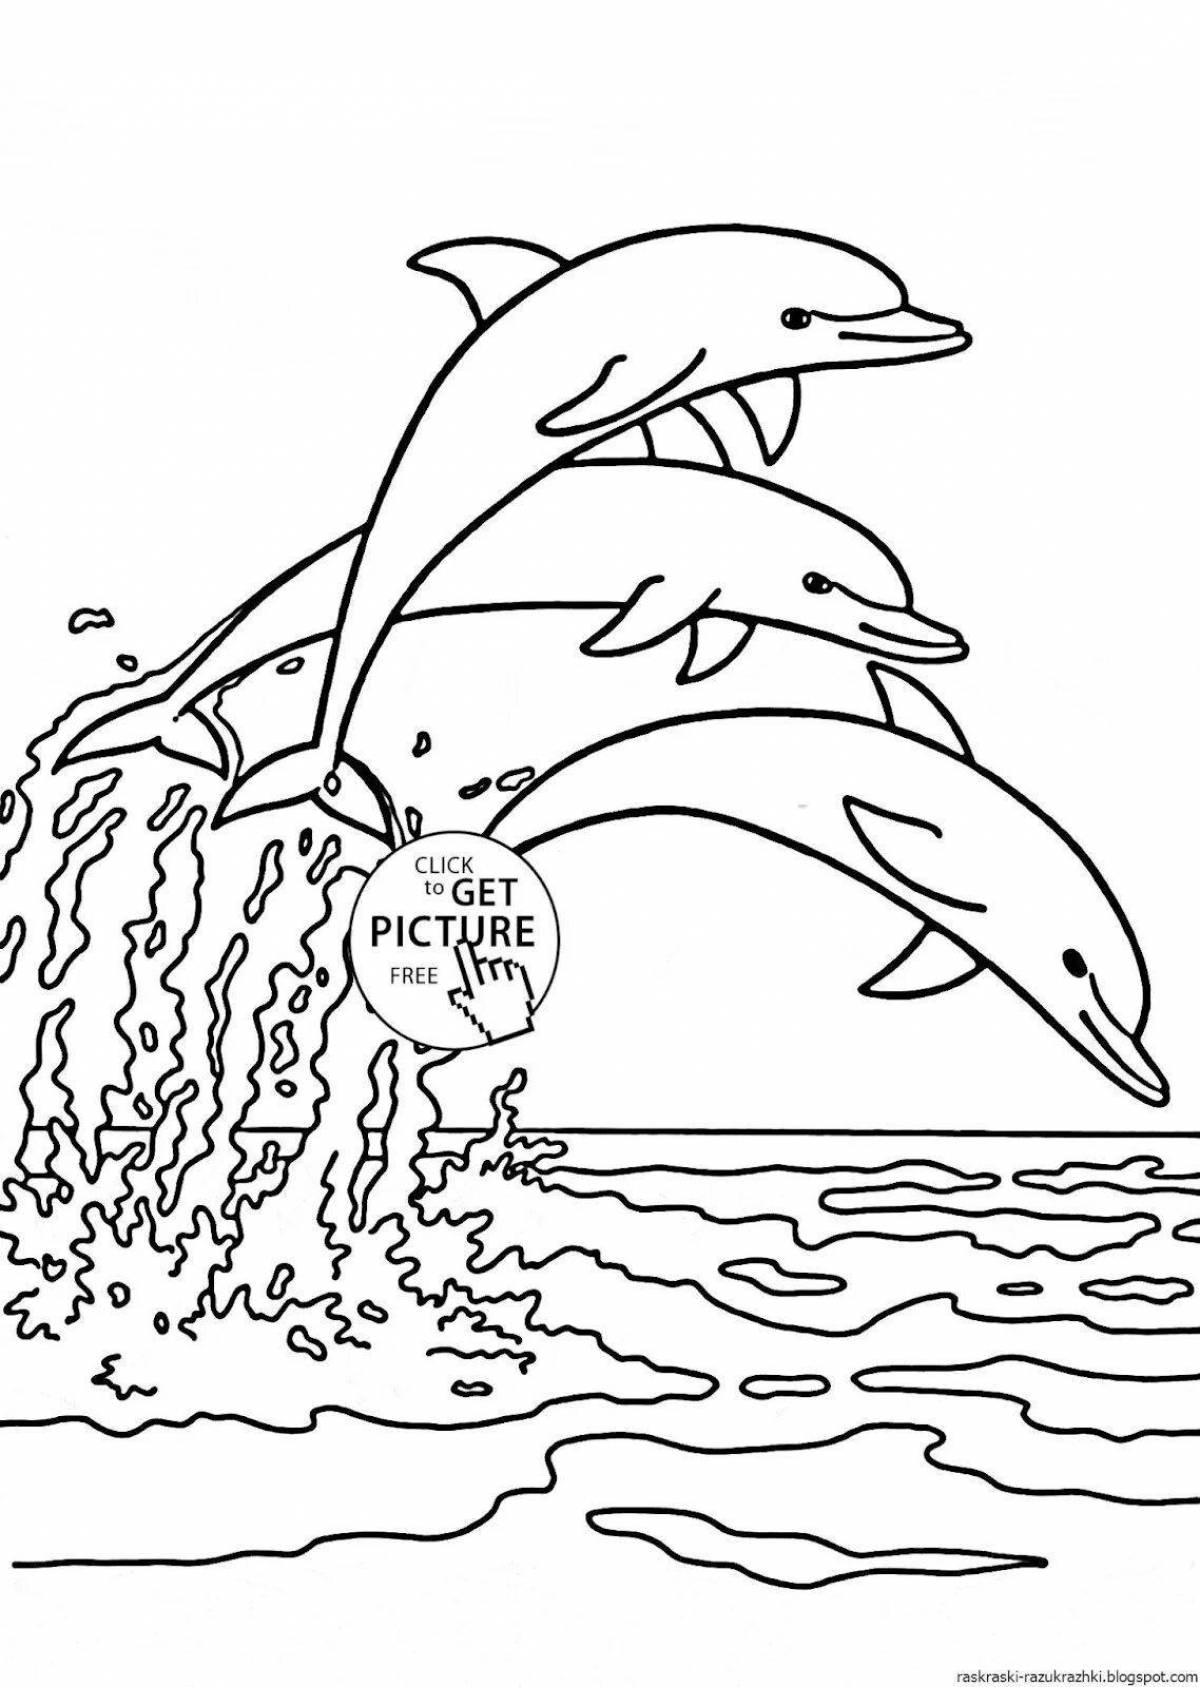 Великолепная раскраска дельфинов